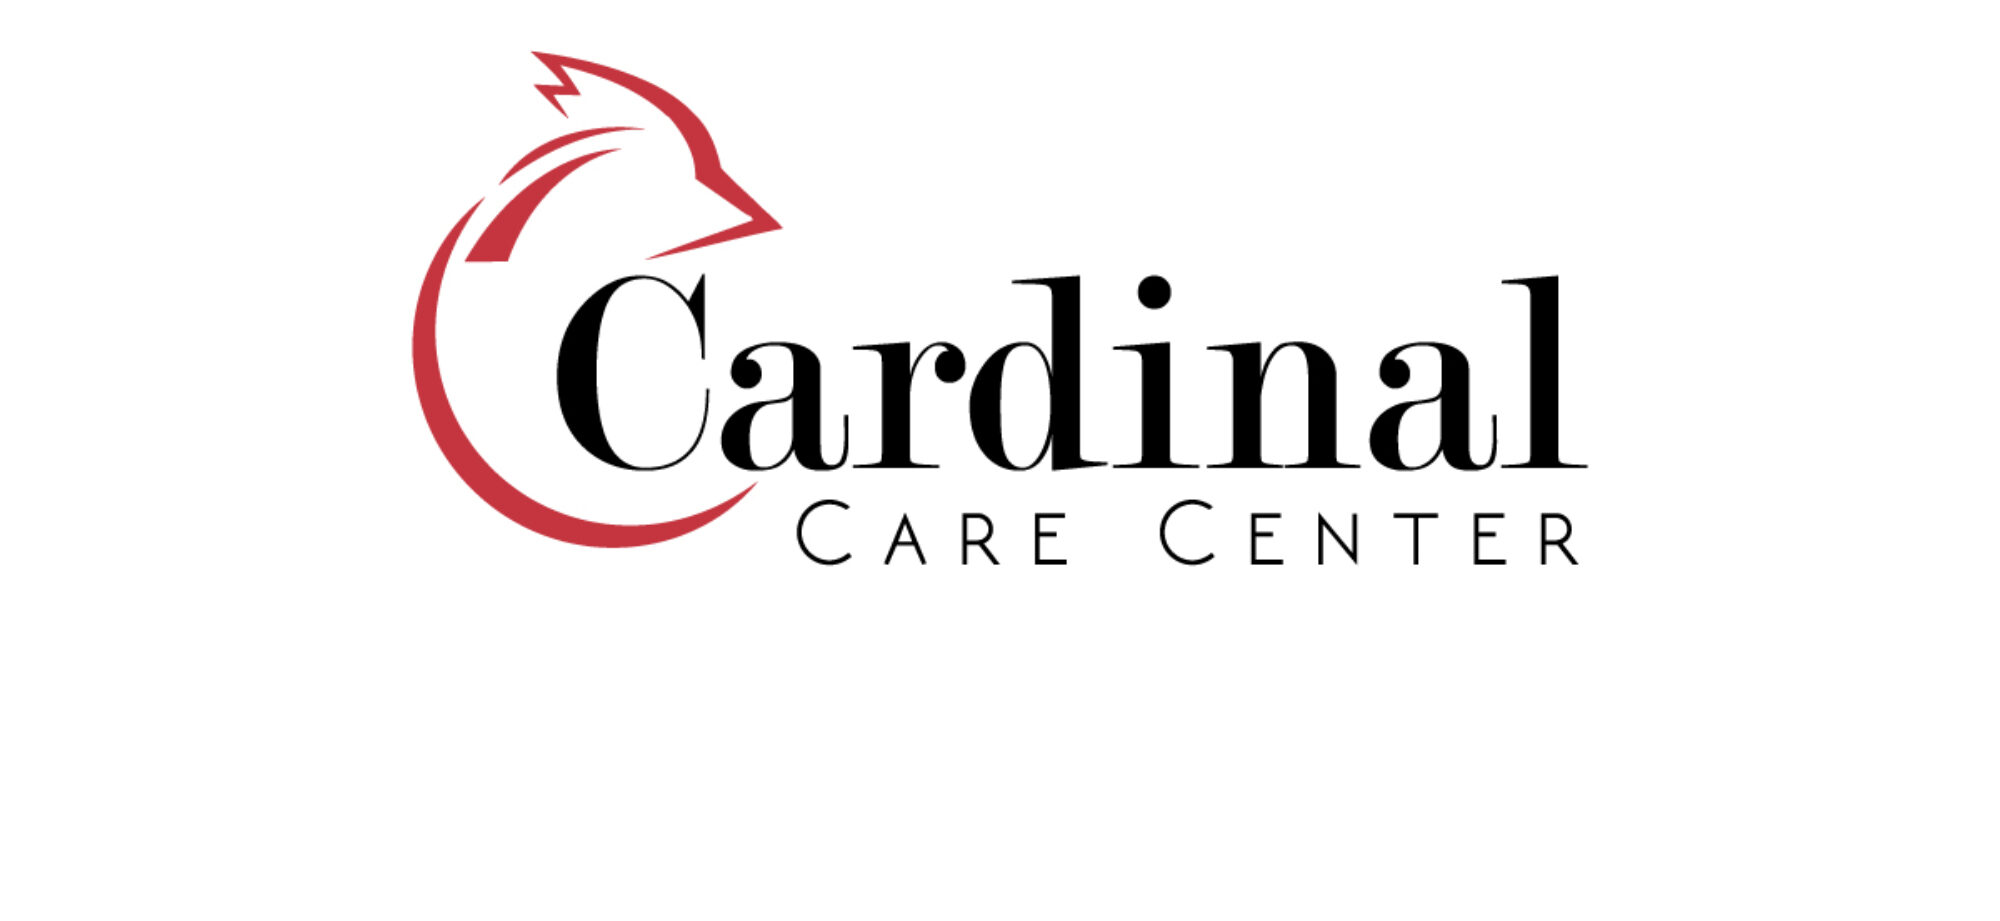 Caring Cardinal 